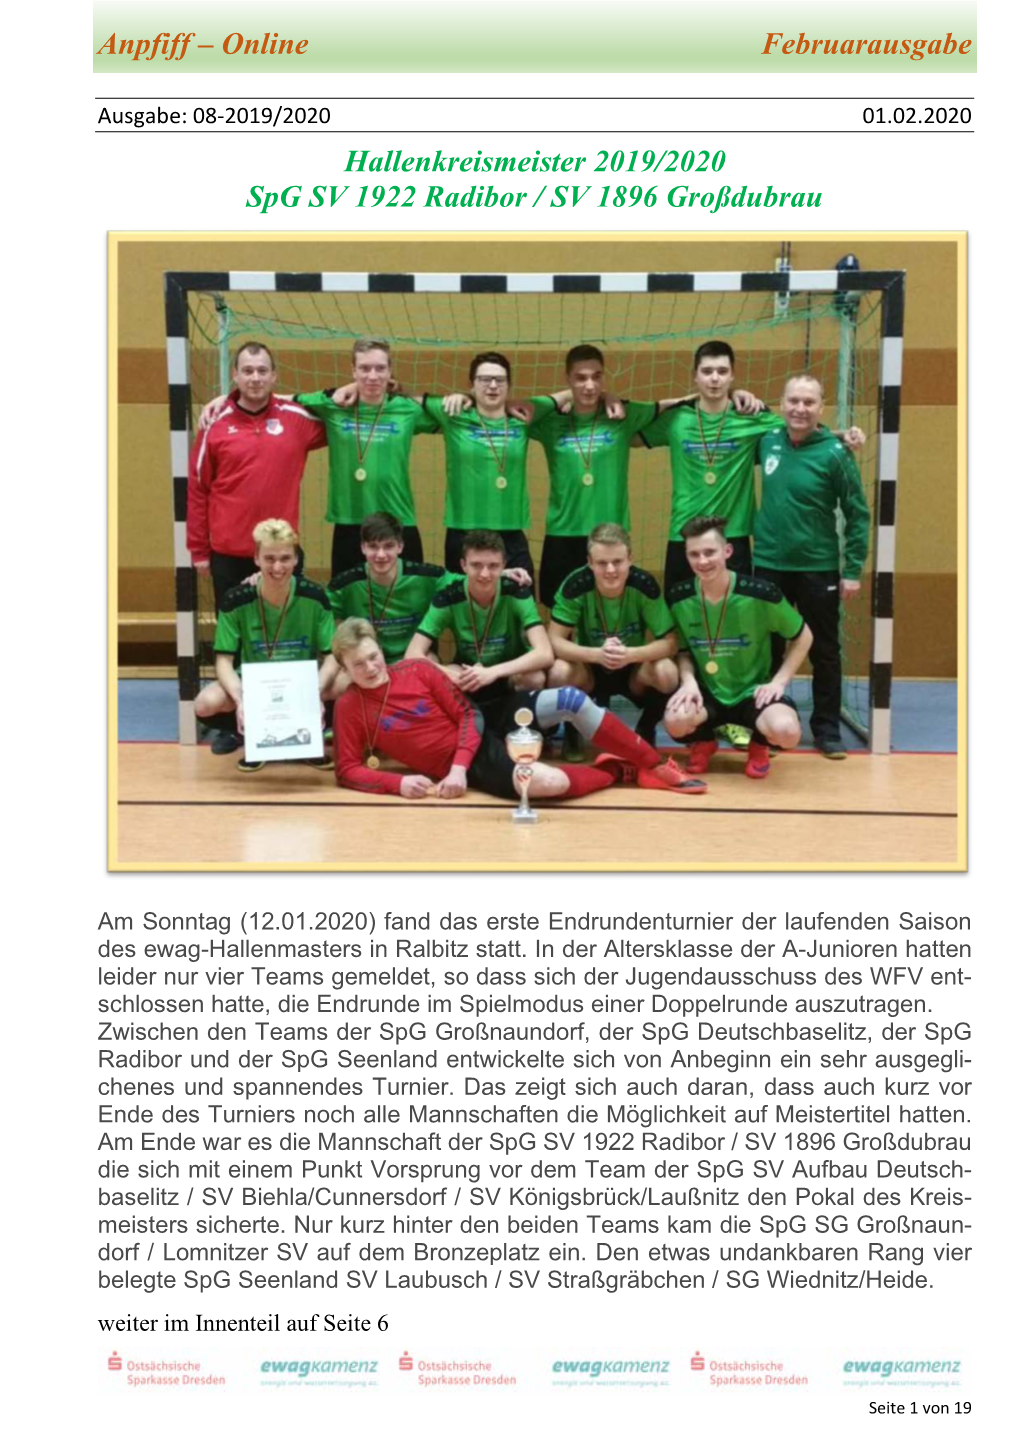 Anpfiff – Online Februarausgabe Hallenkreismeister 2019/2020 Spg SV 1922 Radibor / SV 1896 Großdubrau